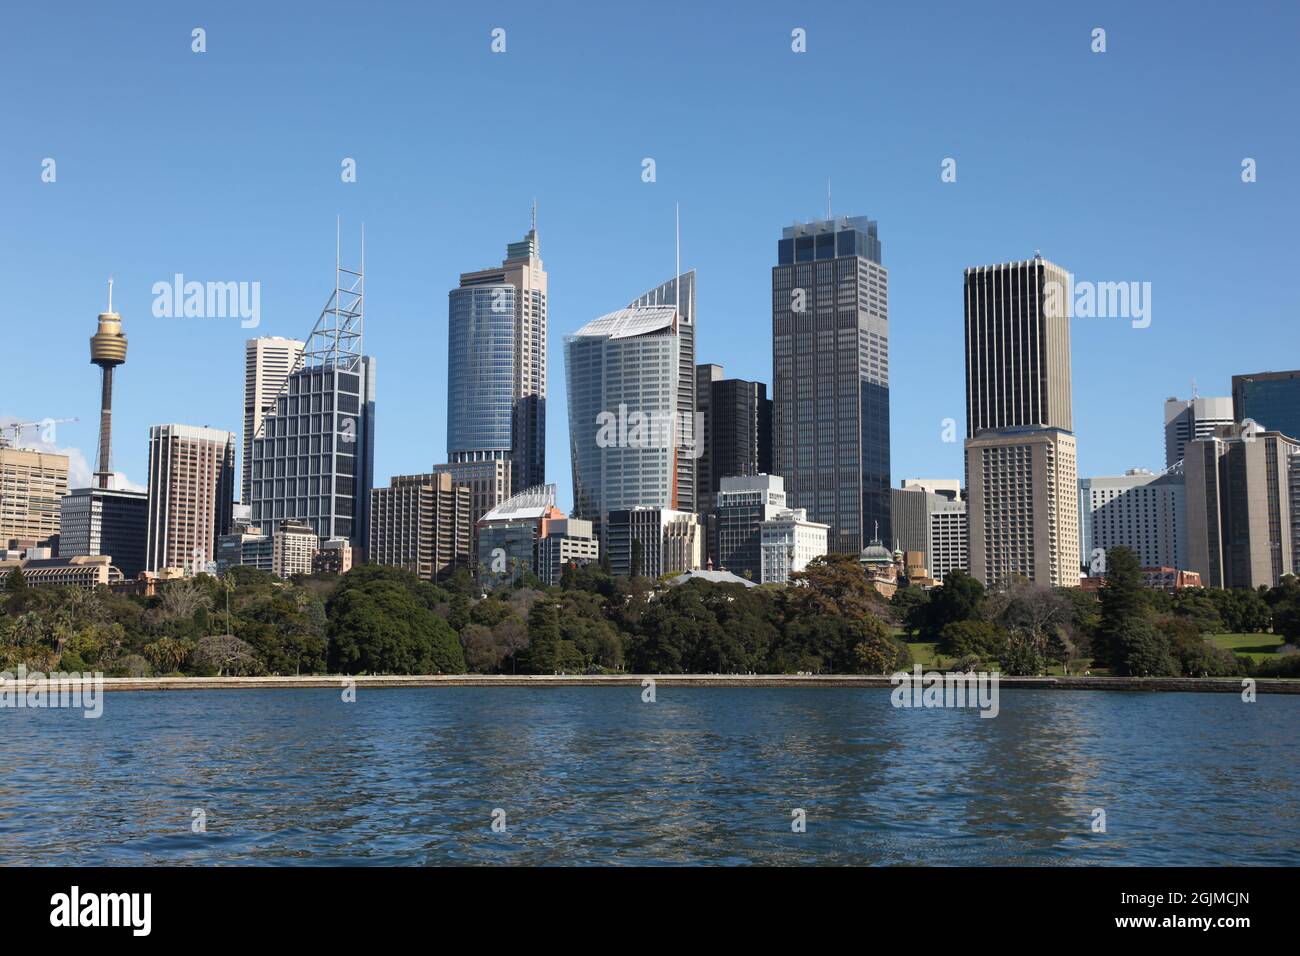 Vue panoramique sur la ville de Sydney sur la crique de la ferme. Sydney est la plus grande ville d'Australie et une destination touristique populaire. Banque D'Images